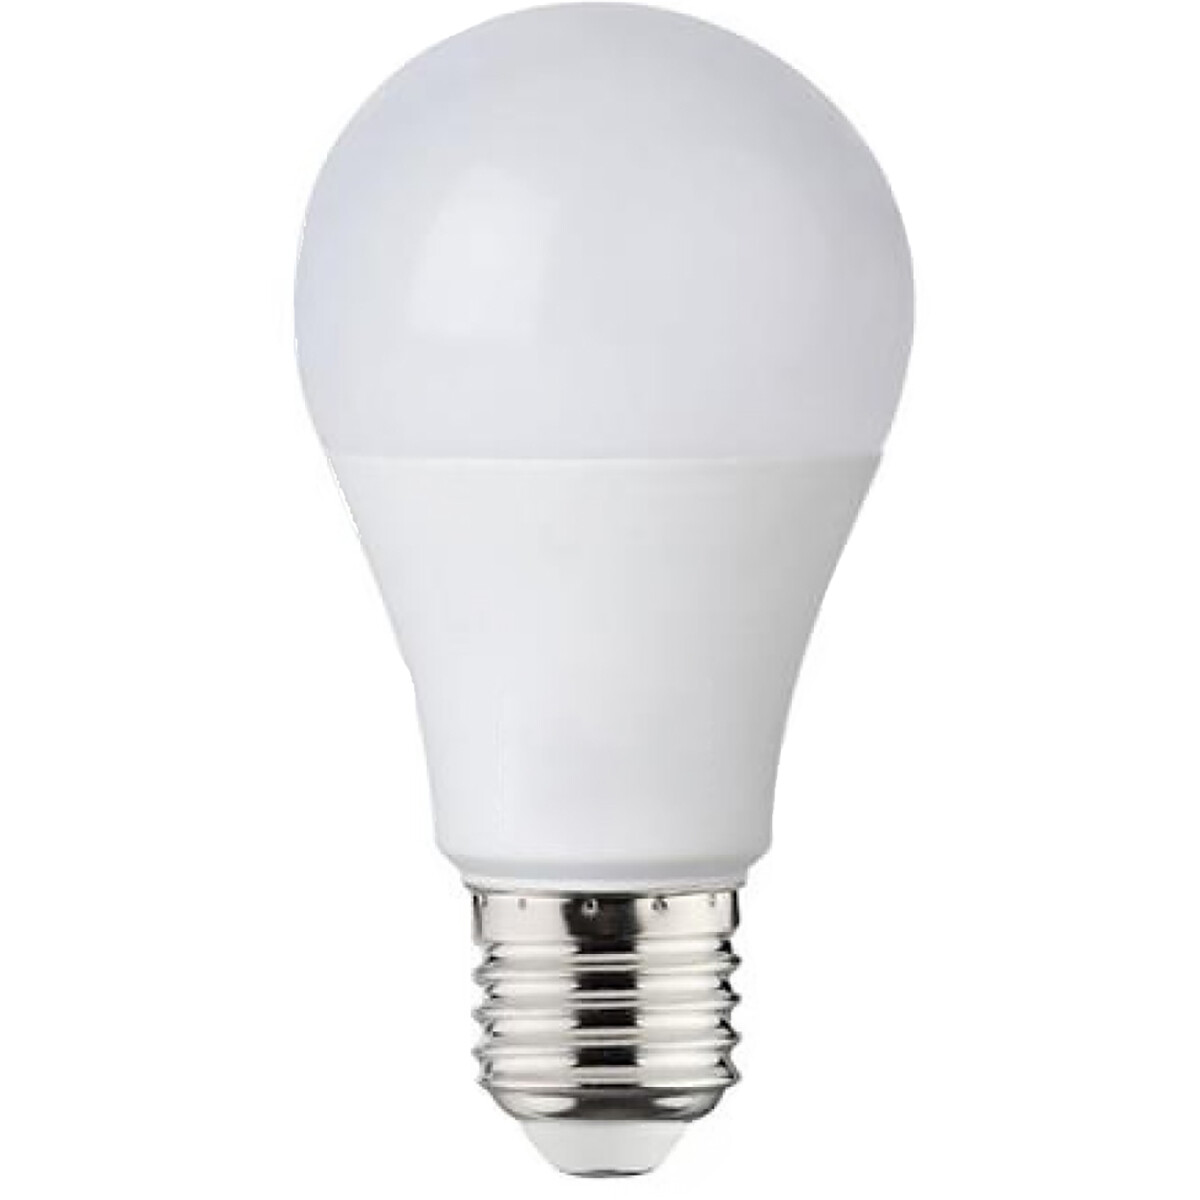 LED Lamp - E27 Fitting - 8W - Helder/Koud Wit 6000K